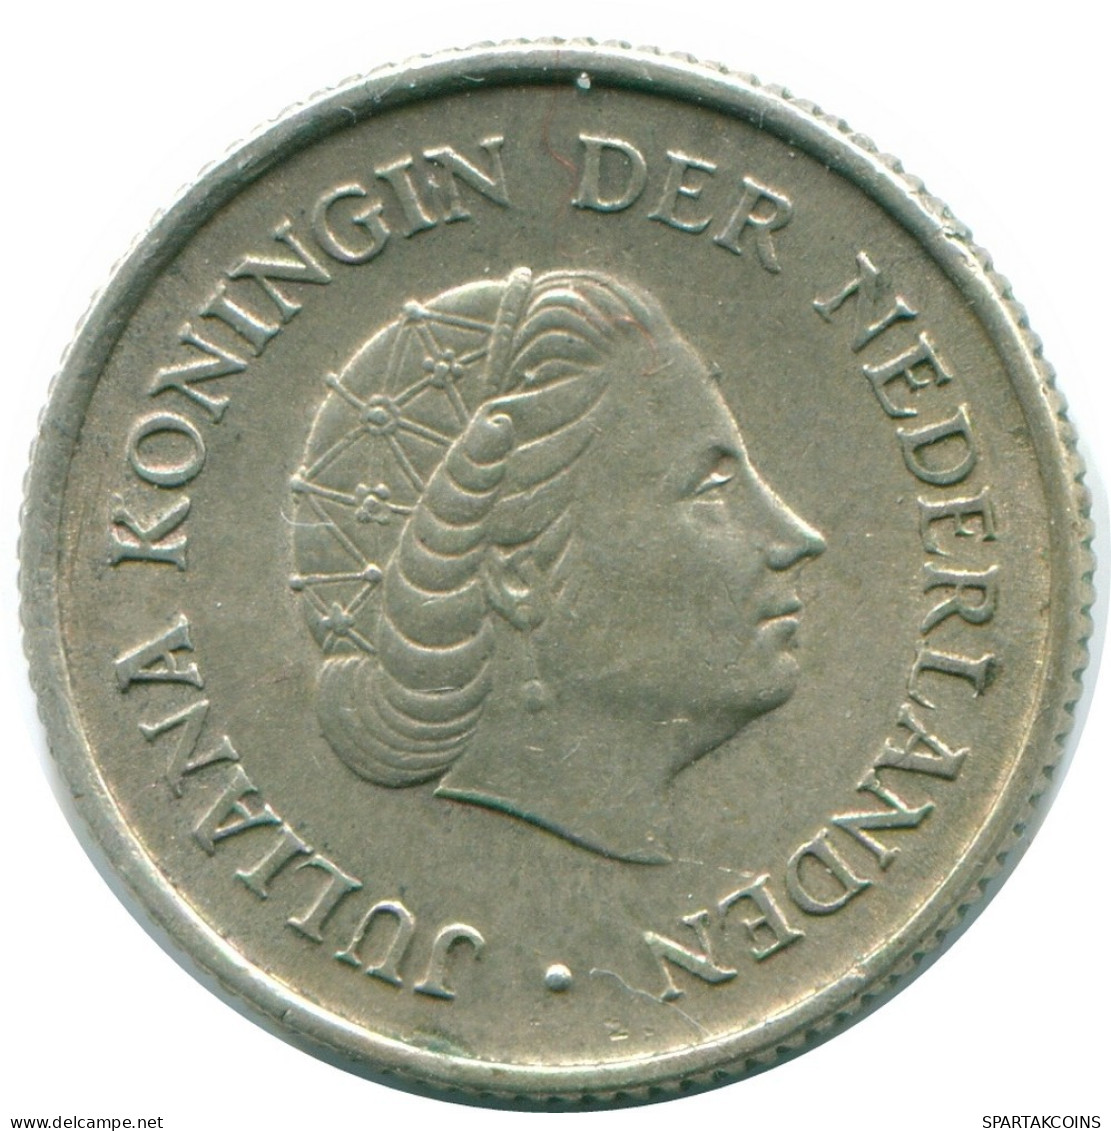 1/4 GULDEN 1965 NIEDERLÄNDISCHE ANTILLEN SILBER Koloniale Münze #NL11422.4.D.A - Niederländische Antillen